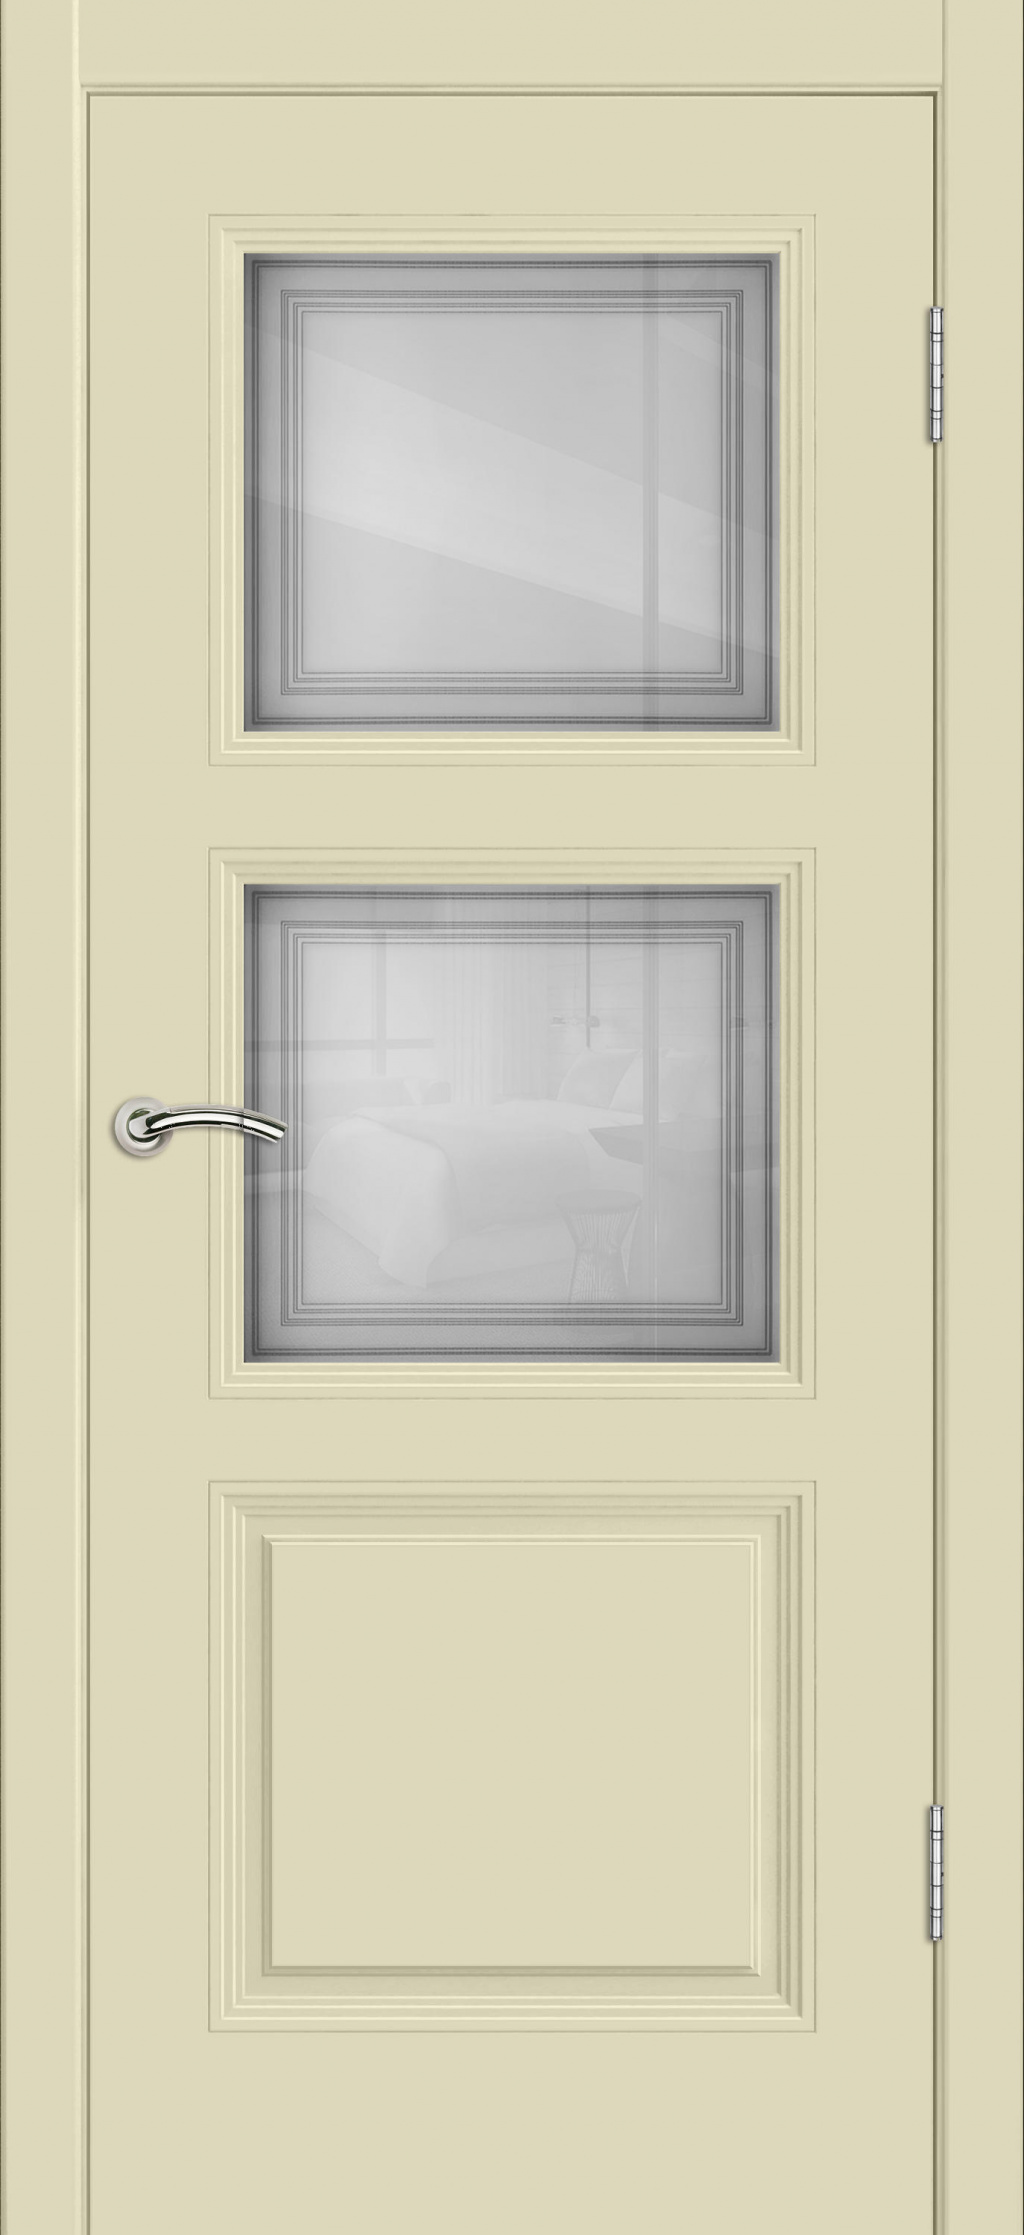 Cordondoor Межкомнатная дверь Vision 3 ПО Узор 1-2, арт. 19310 - фото №1